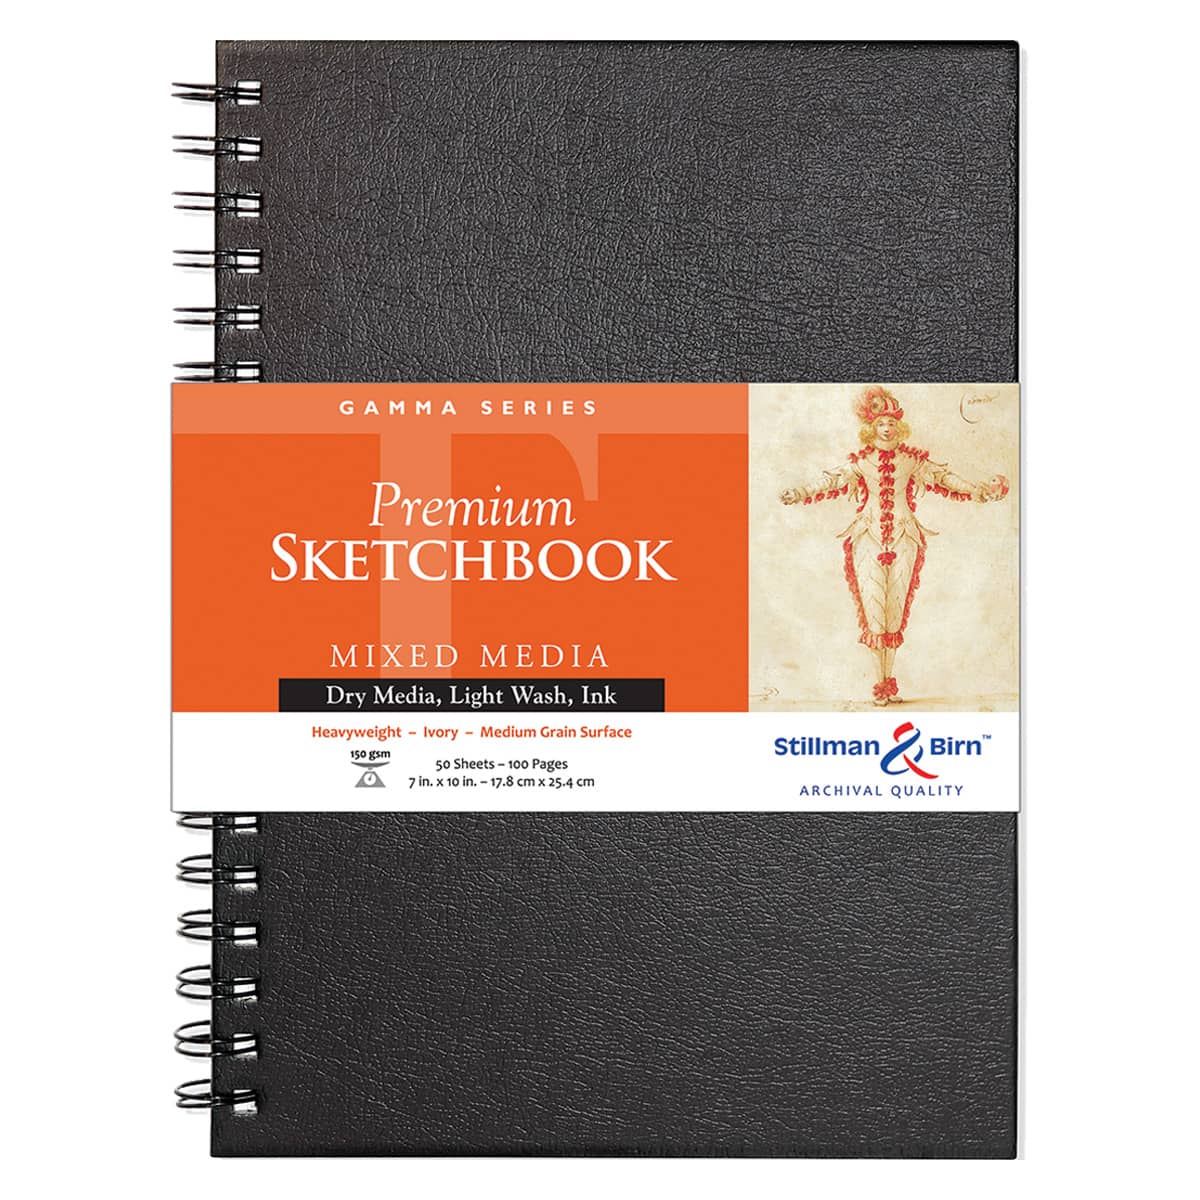 Blick Wirebound Sketchbook - 10 inch x 7 inch, Wire Bound, 80 Sheets